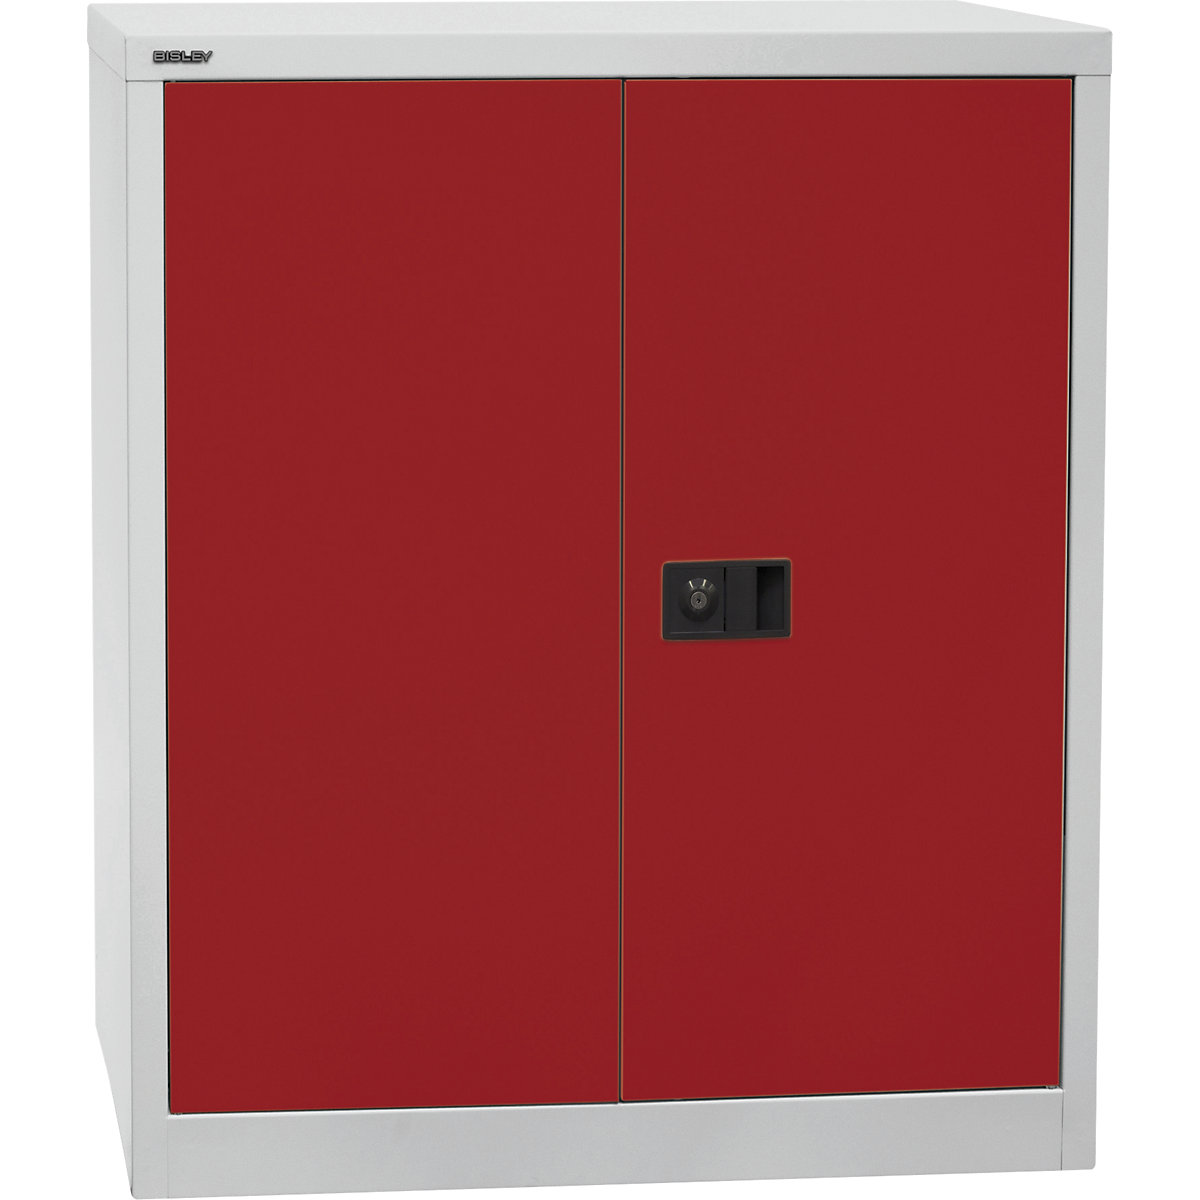 Armario de puertas batientes UNIVERSAL – BISLEY, H x A x P 1000 x 914 x 400 mm, 1 balda, 2 pisos de archivadores, gris luminoso / rojo cardenal-6